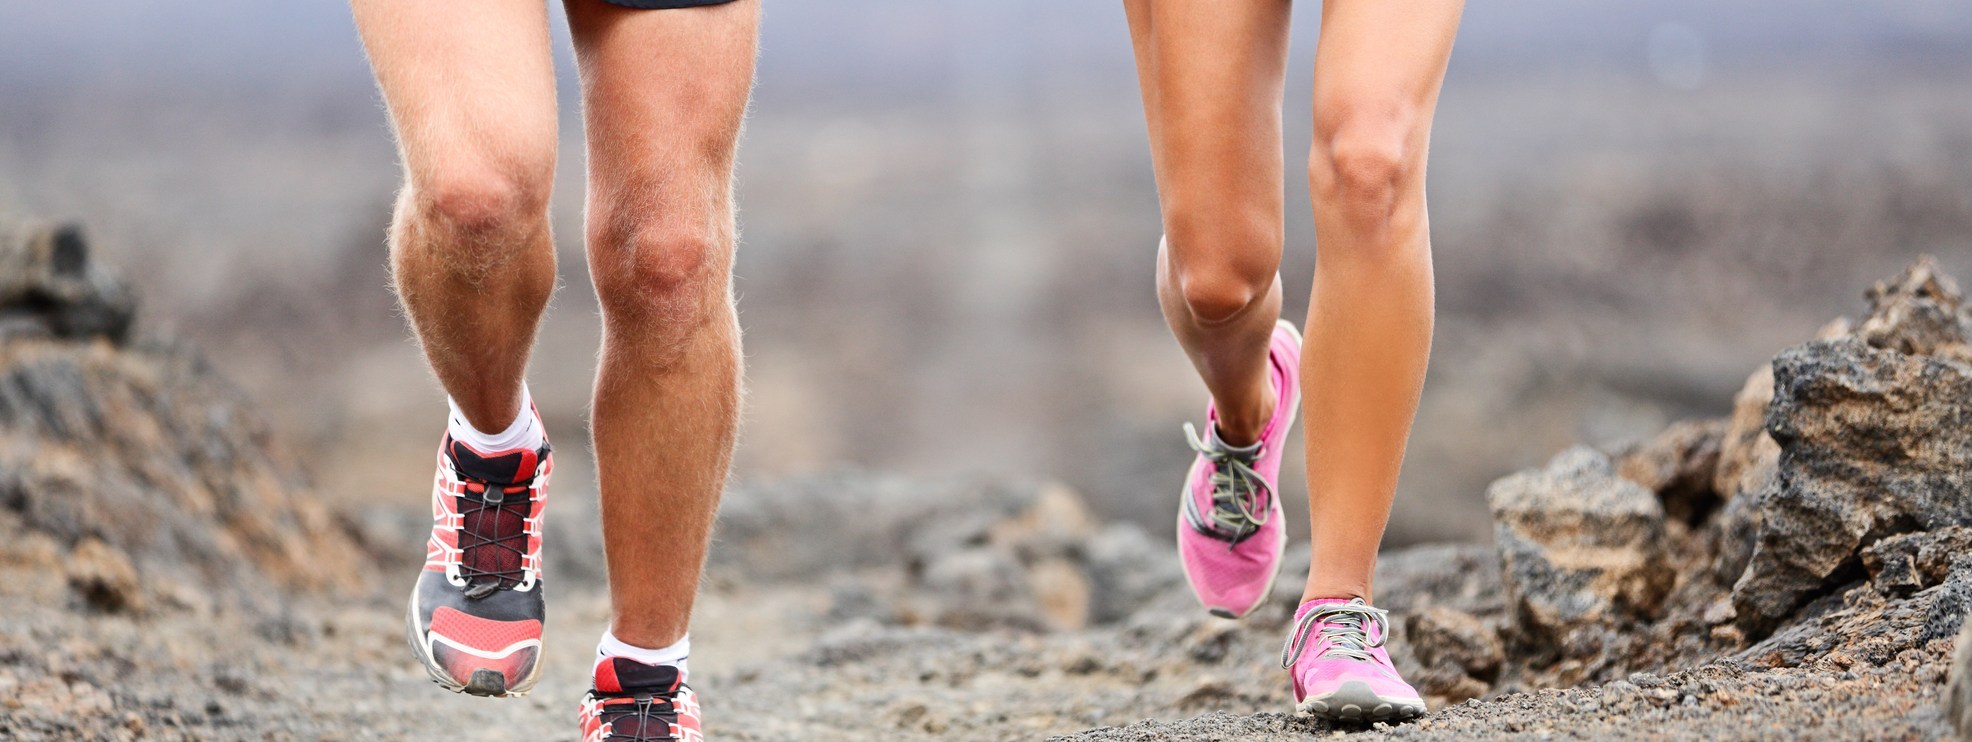 Effetti della corsa sulla cartilagine in runner con e senza artrosi di ginocchio